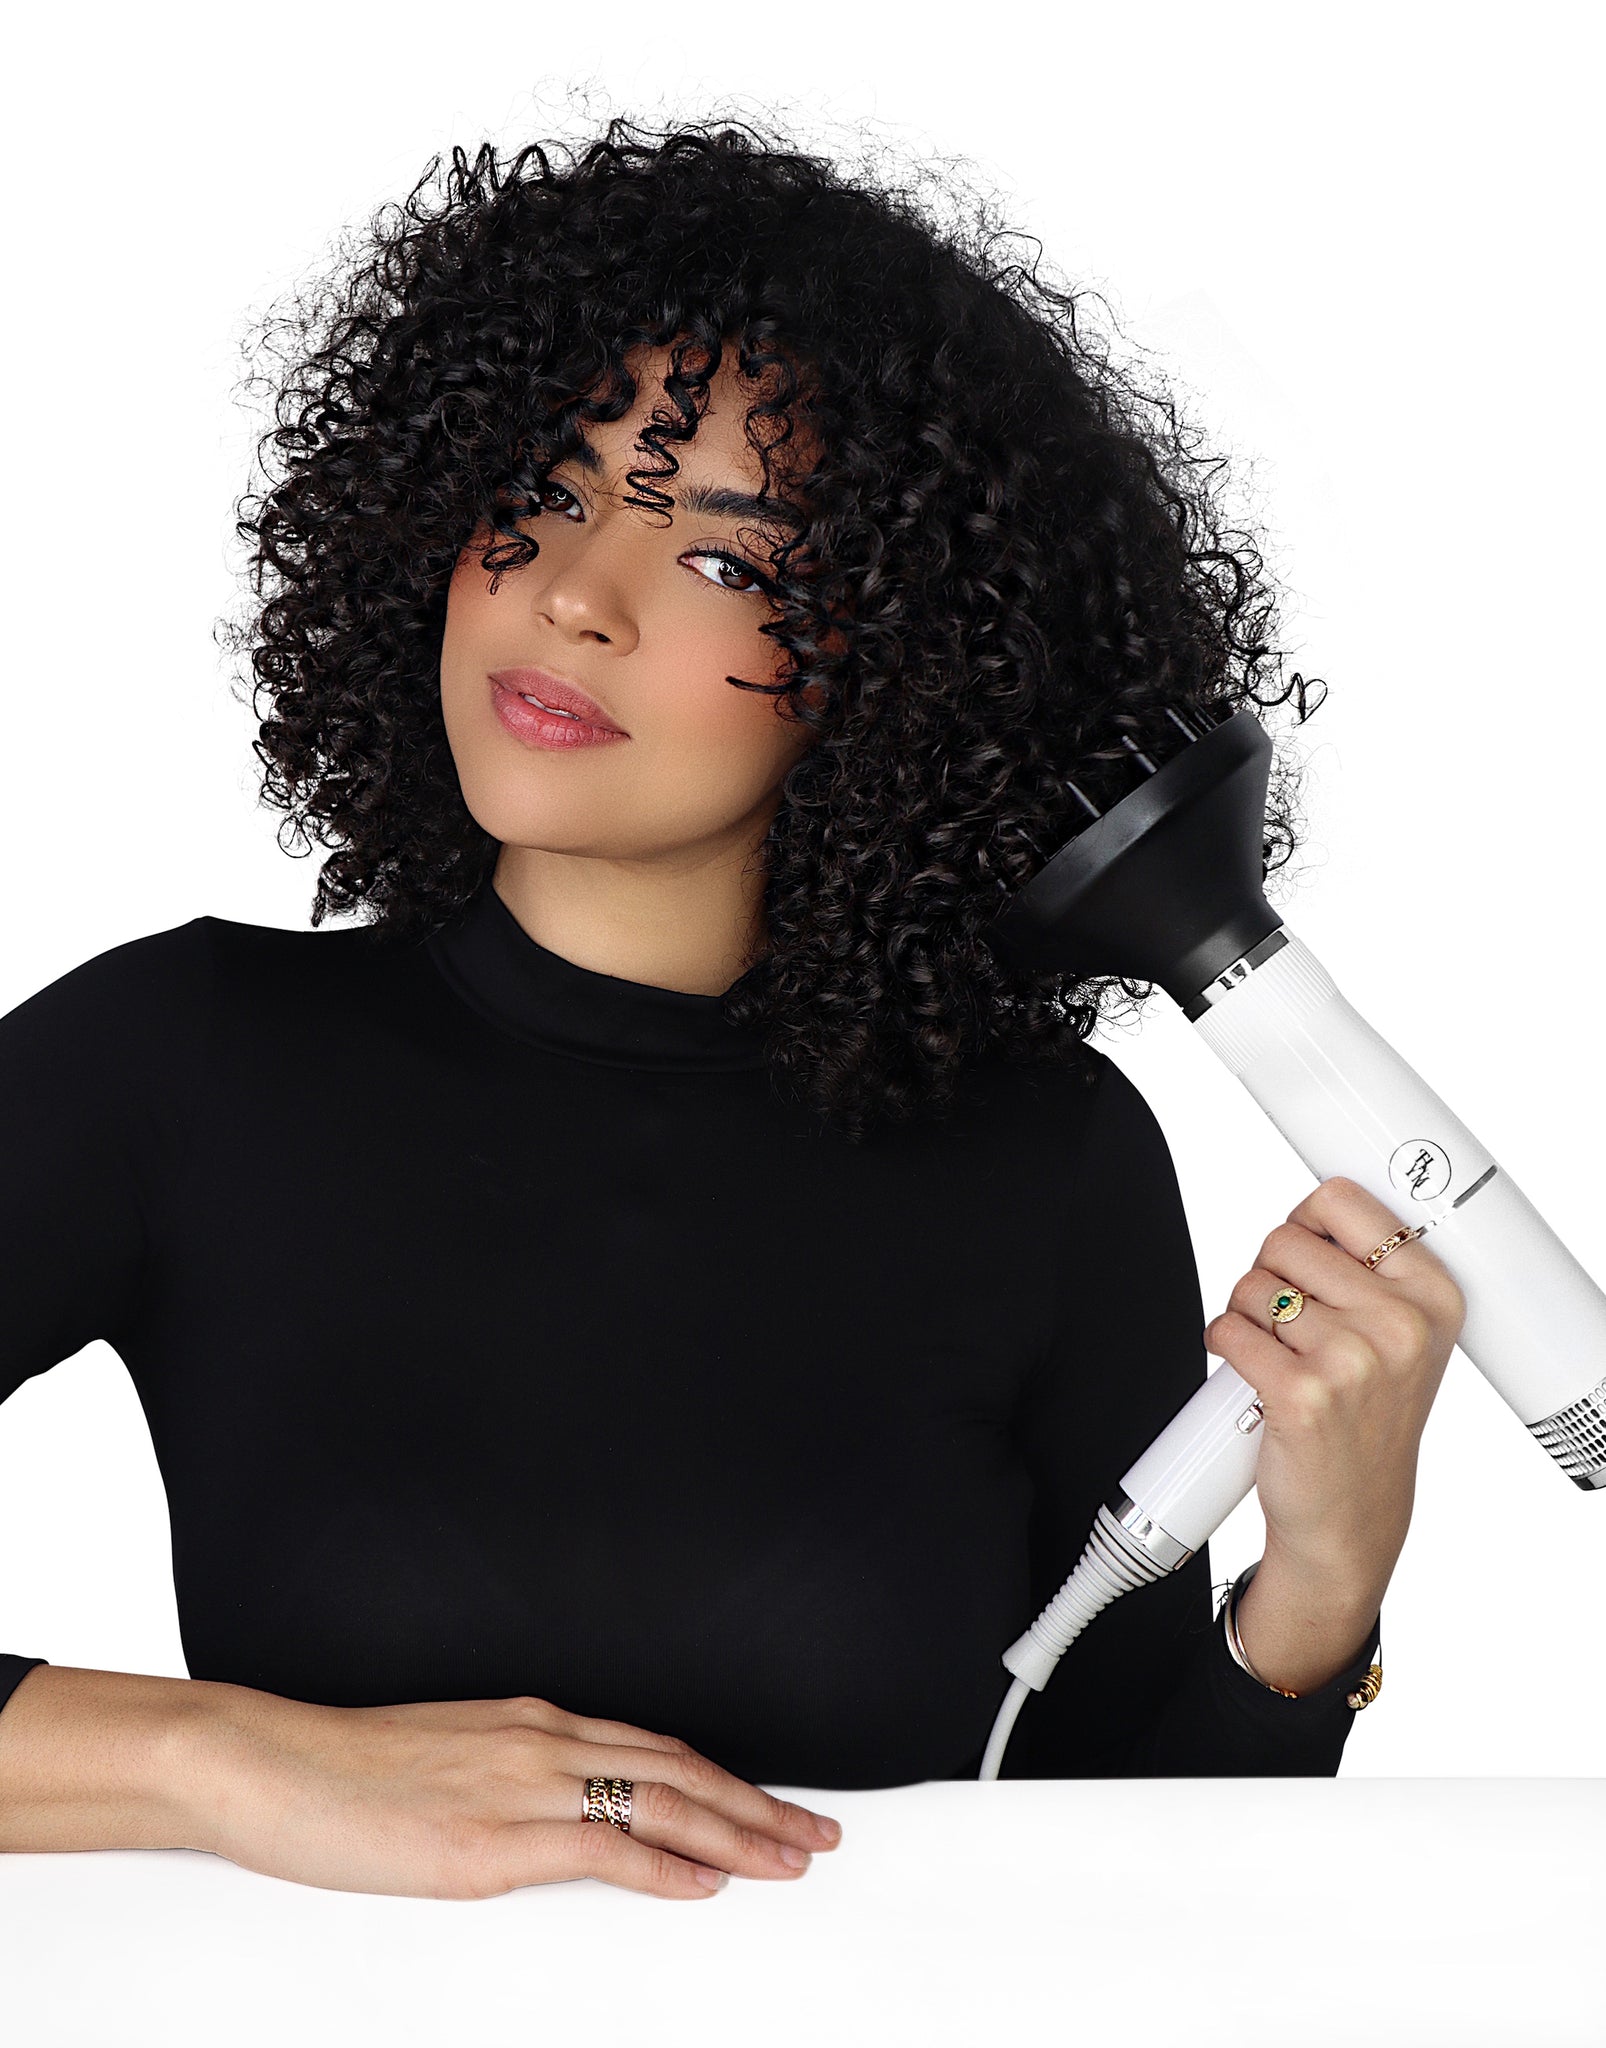 Diffuseur Sèche Cheveux universel Interface Réglable Convient à tous les  sèche-cheveux pour Cheveux Bouclés ou Ondulés Styling - Cdiscount  Electroménager